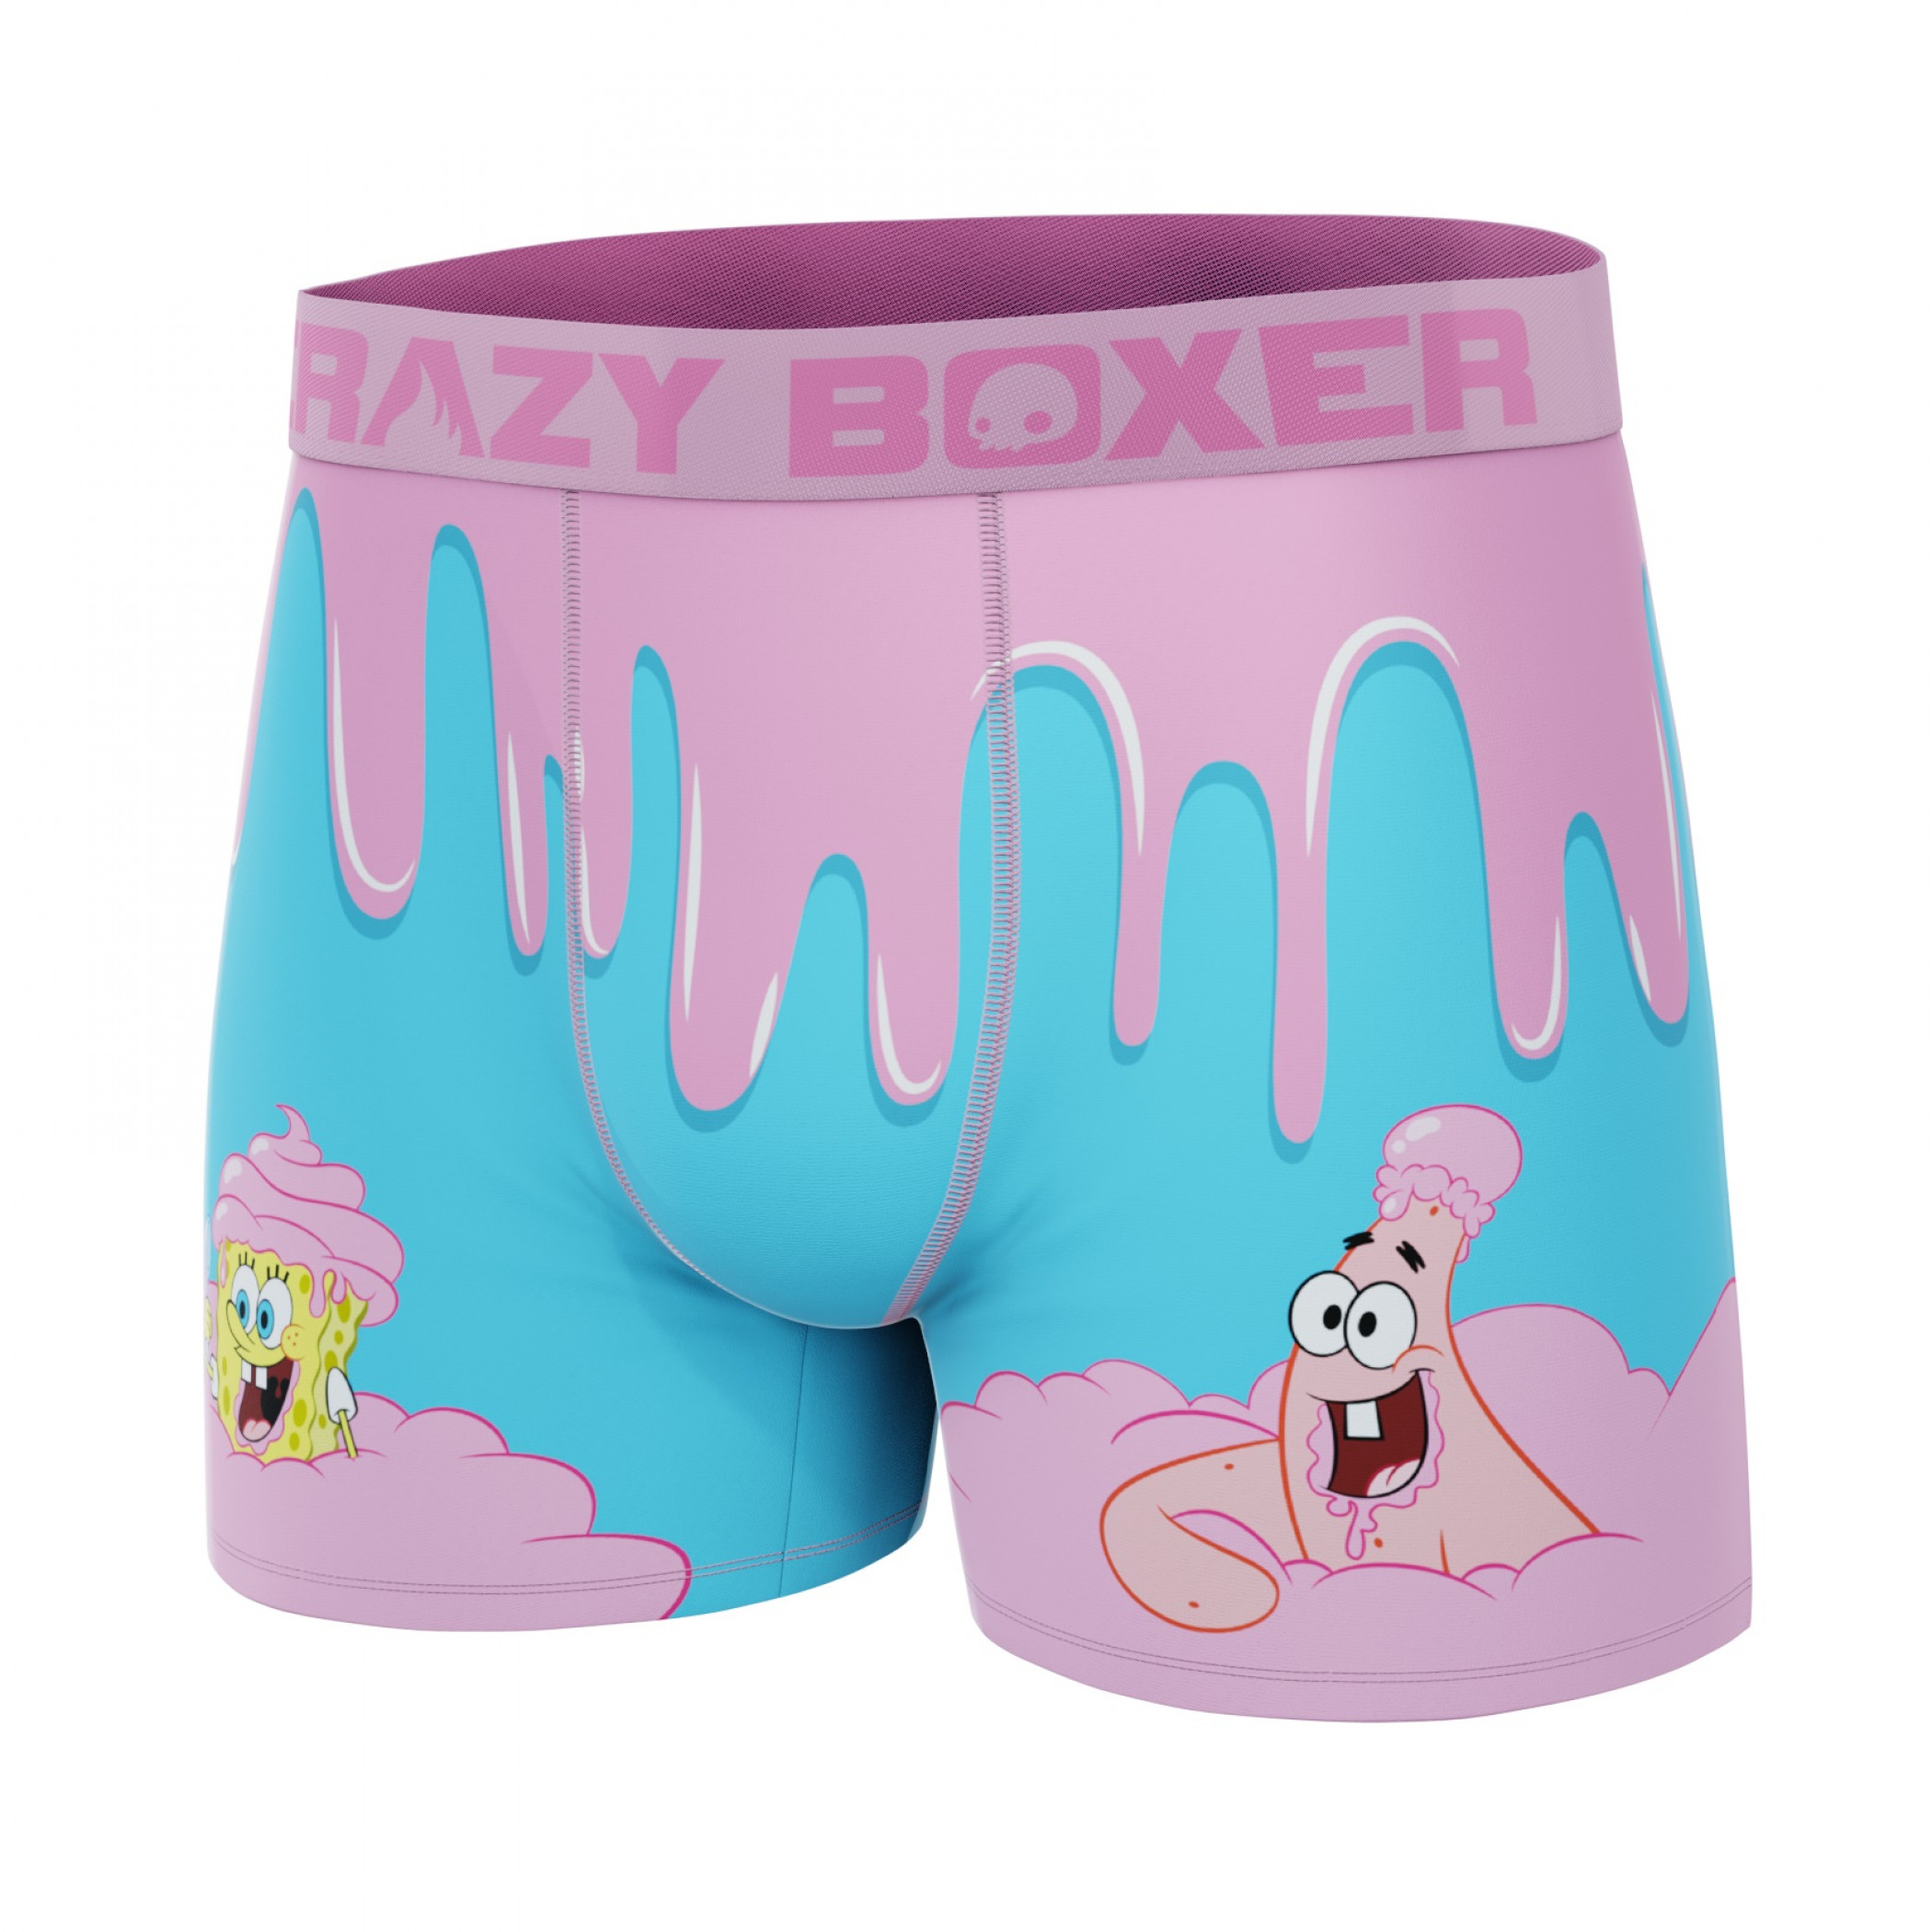 Crazy Boxers SpongeBob SquarePants Dessert Boxer Briefs in Ice Cream Box